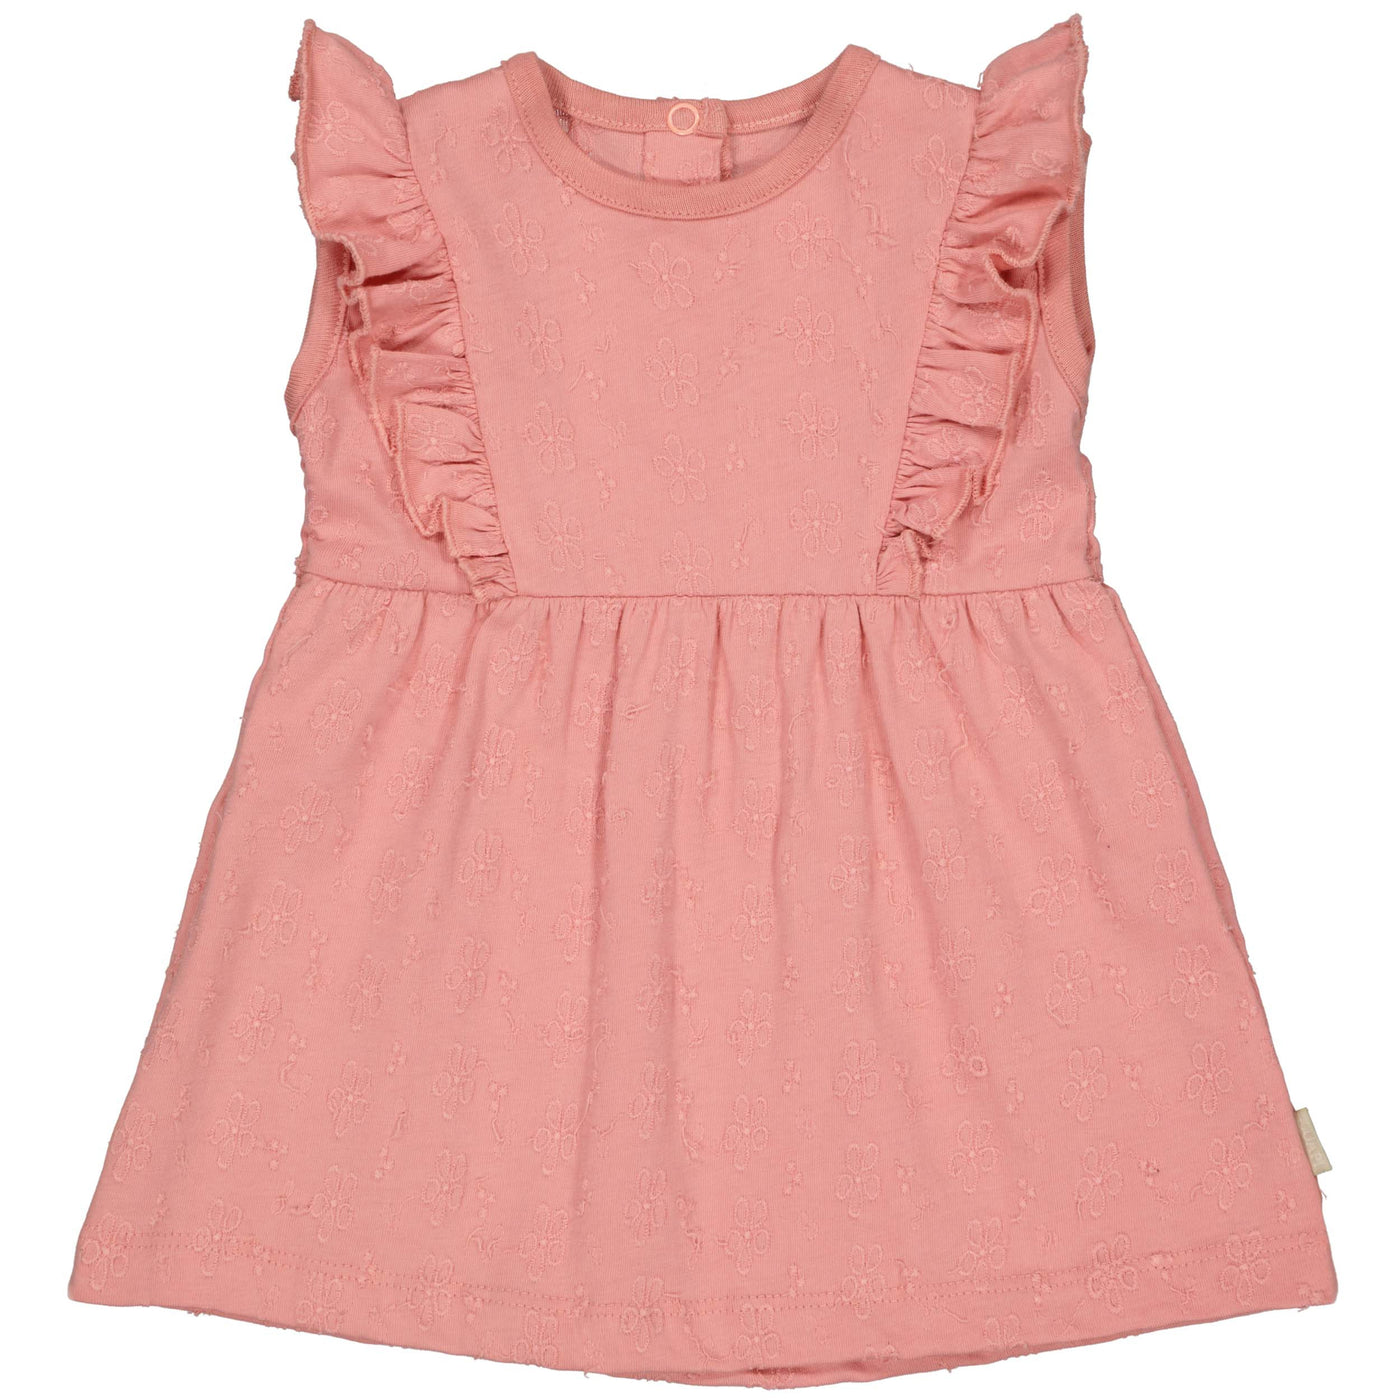 Quapi Newborn S24 Girls Dress DAANTJEQNBS24 Pink Blush